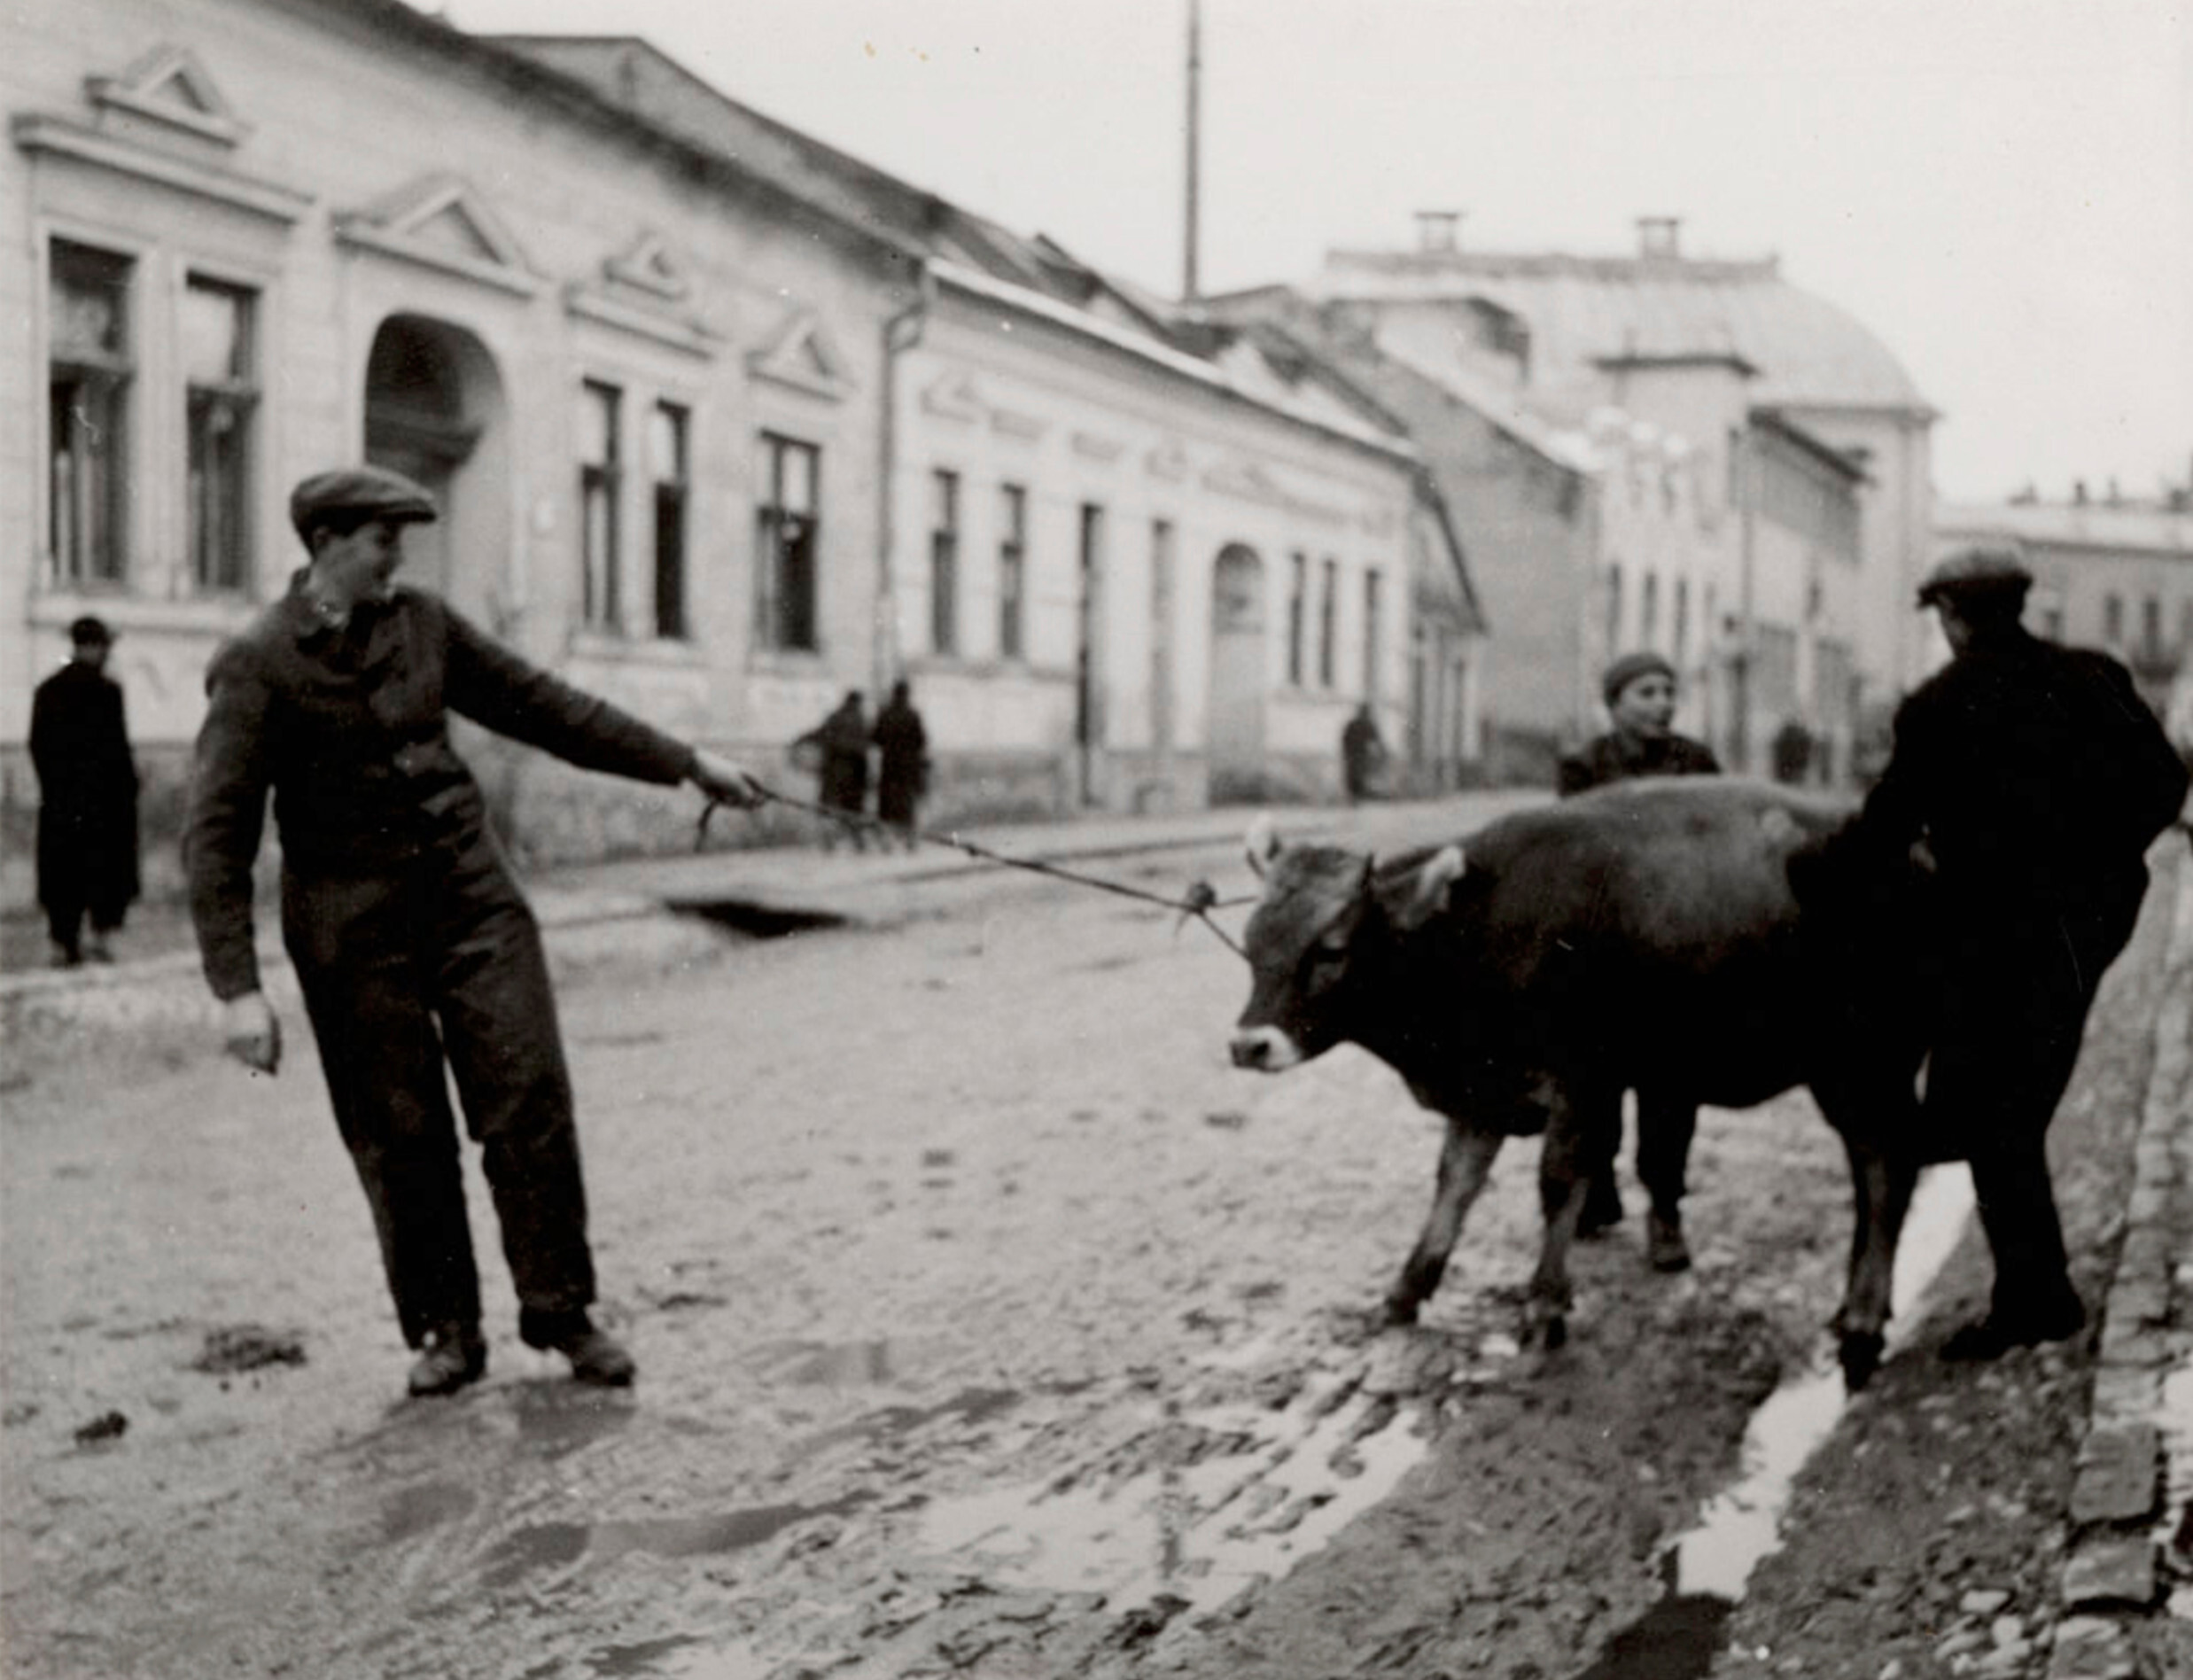 Мужчина тянет корову по улице, Восточная Европа, ок. 1935–38 гг. Фотограф Роман Вишняк